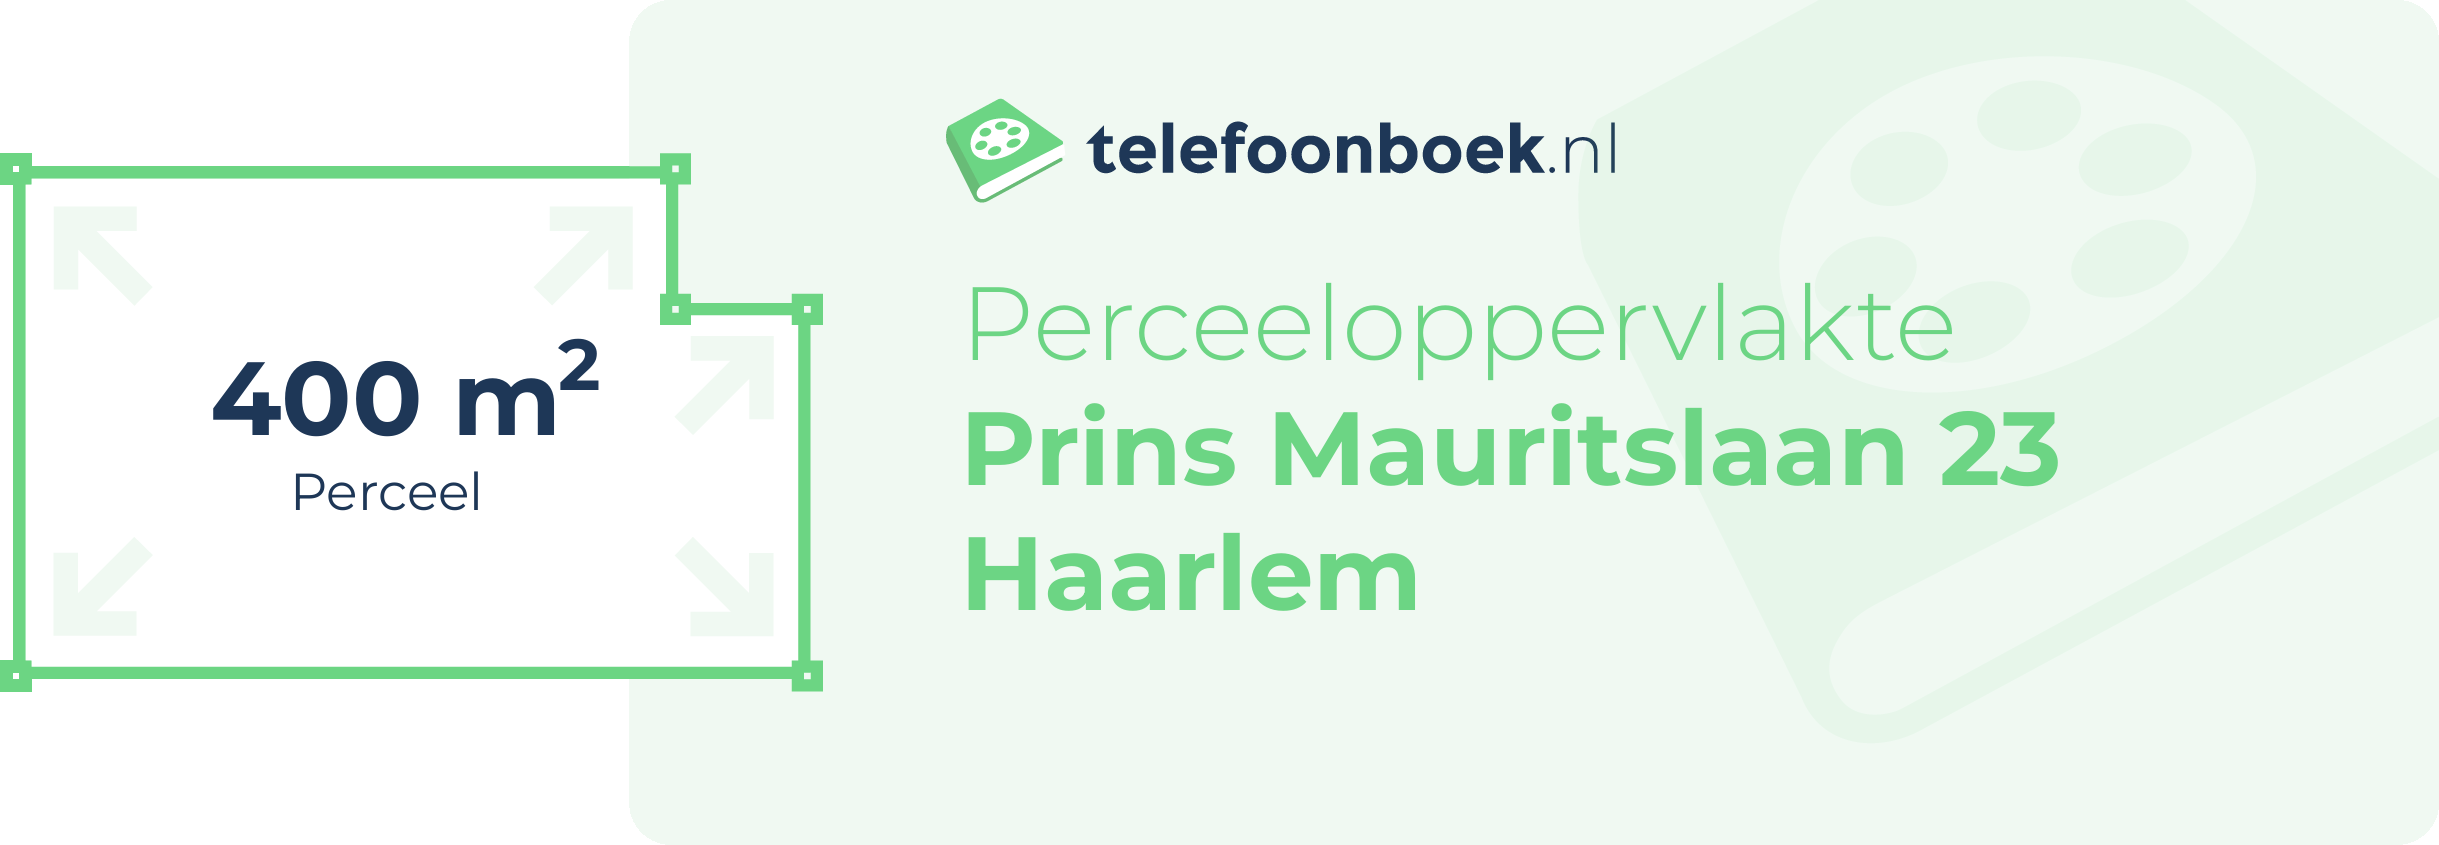 Perceeloppervlakte Prins Mauritslaan 23 Haarlem